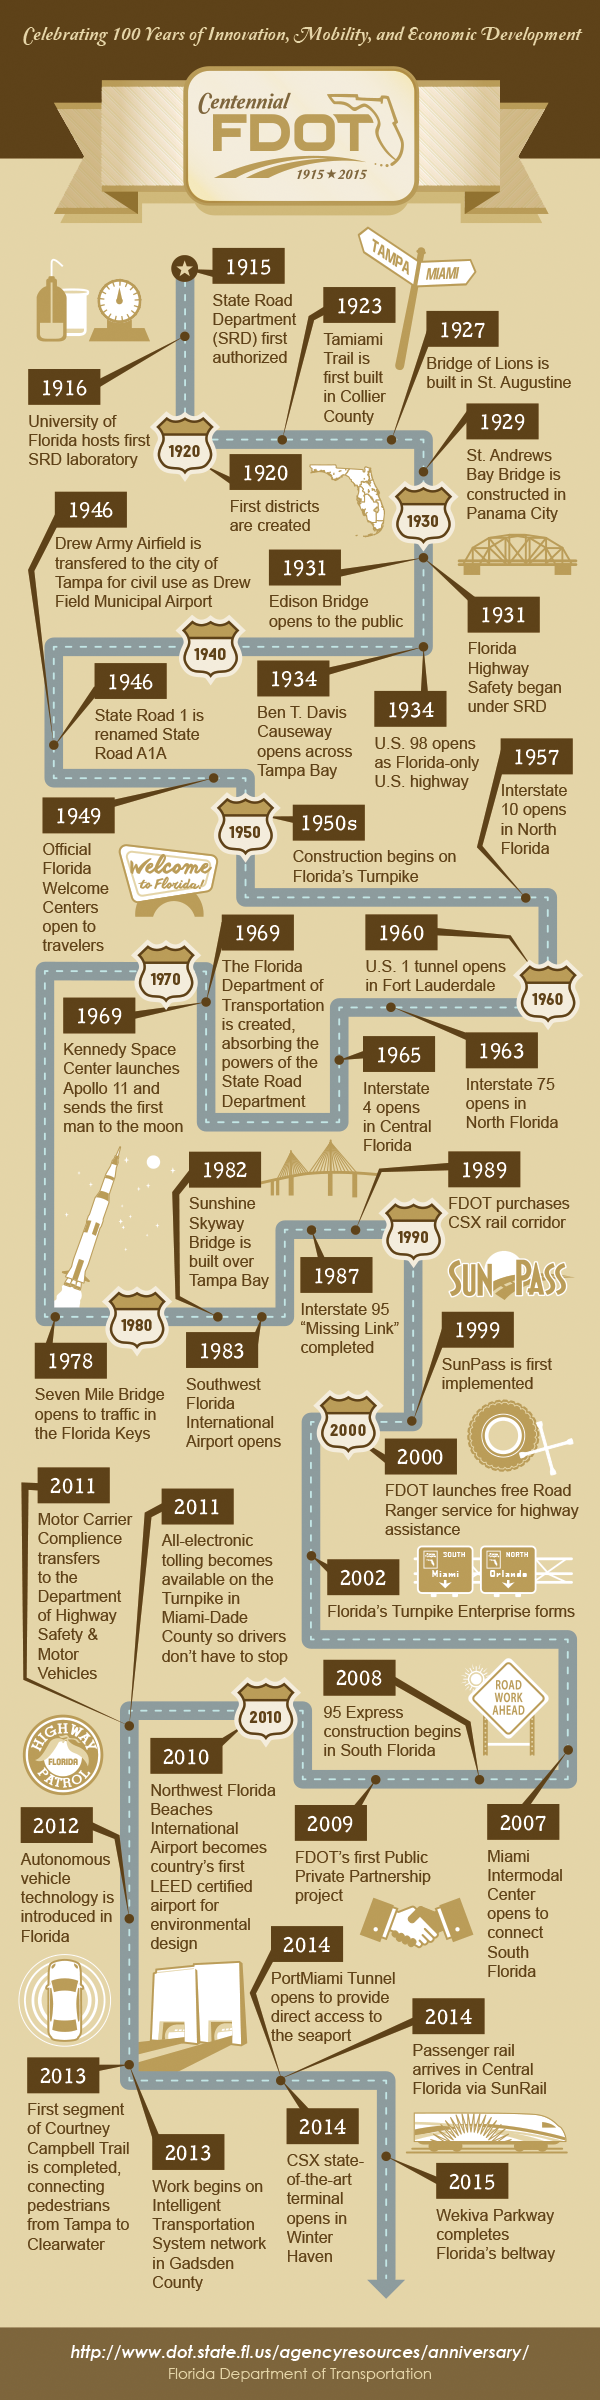 FDOT centennial timeline